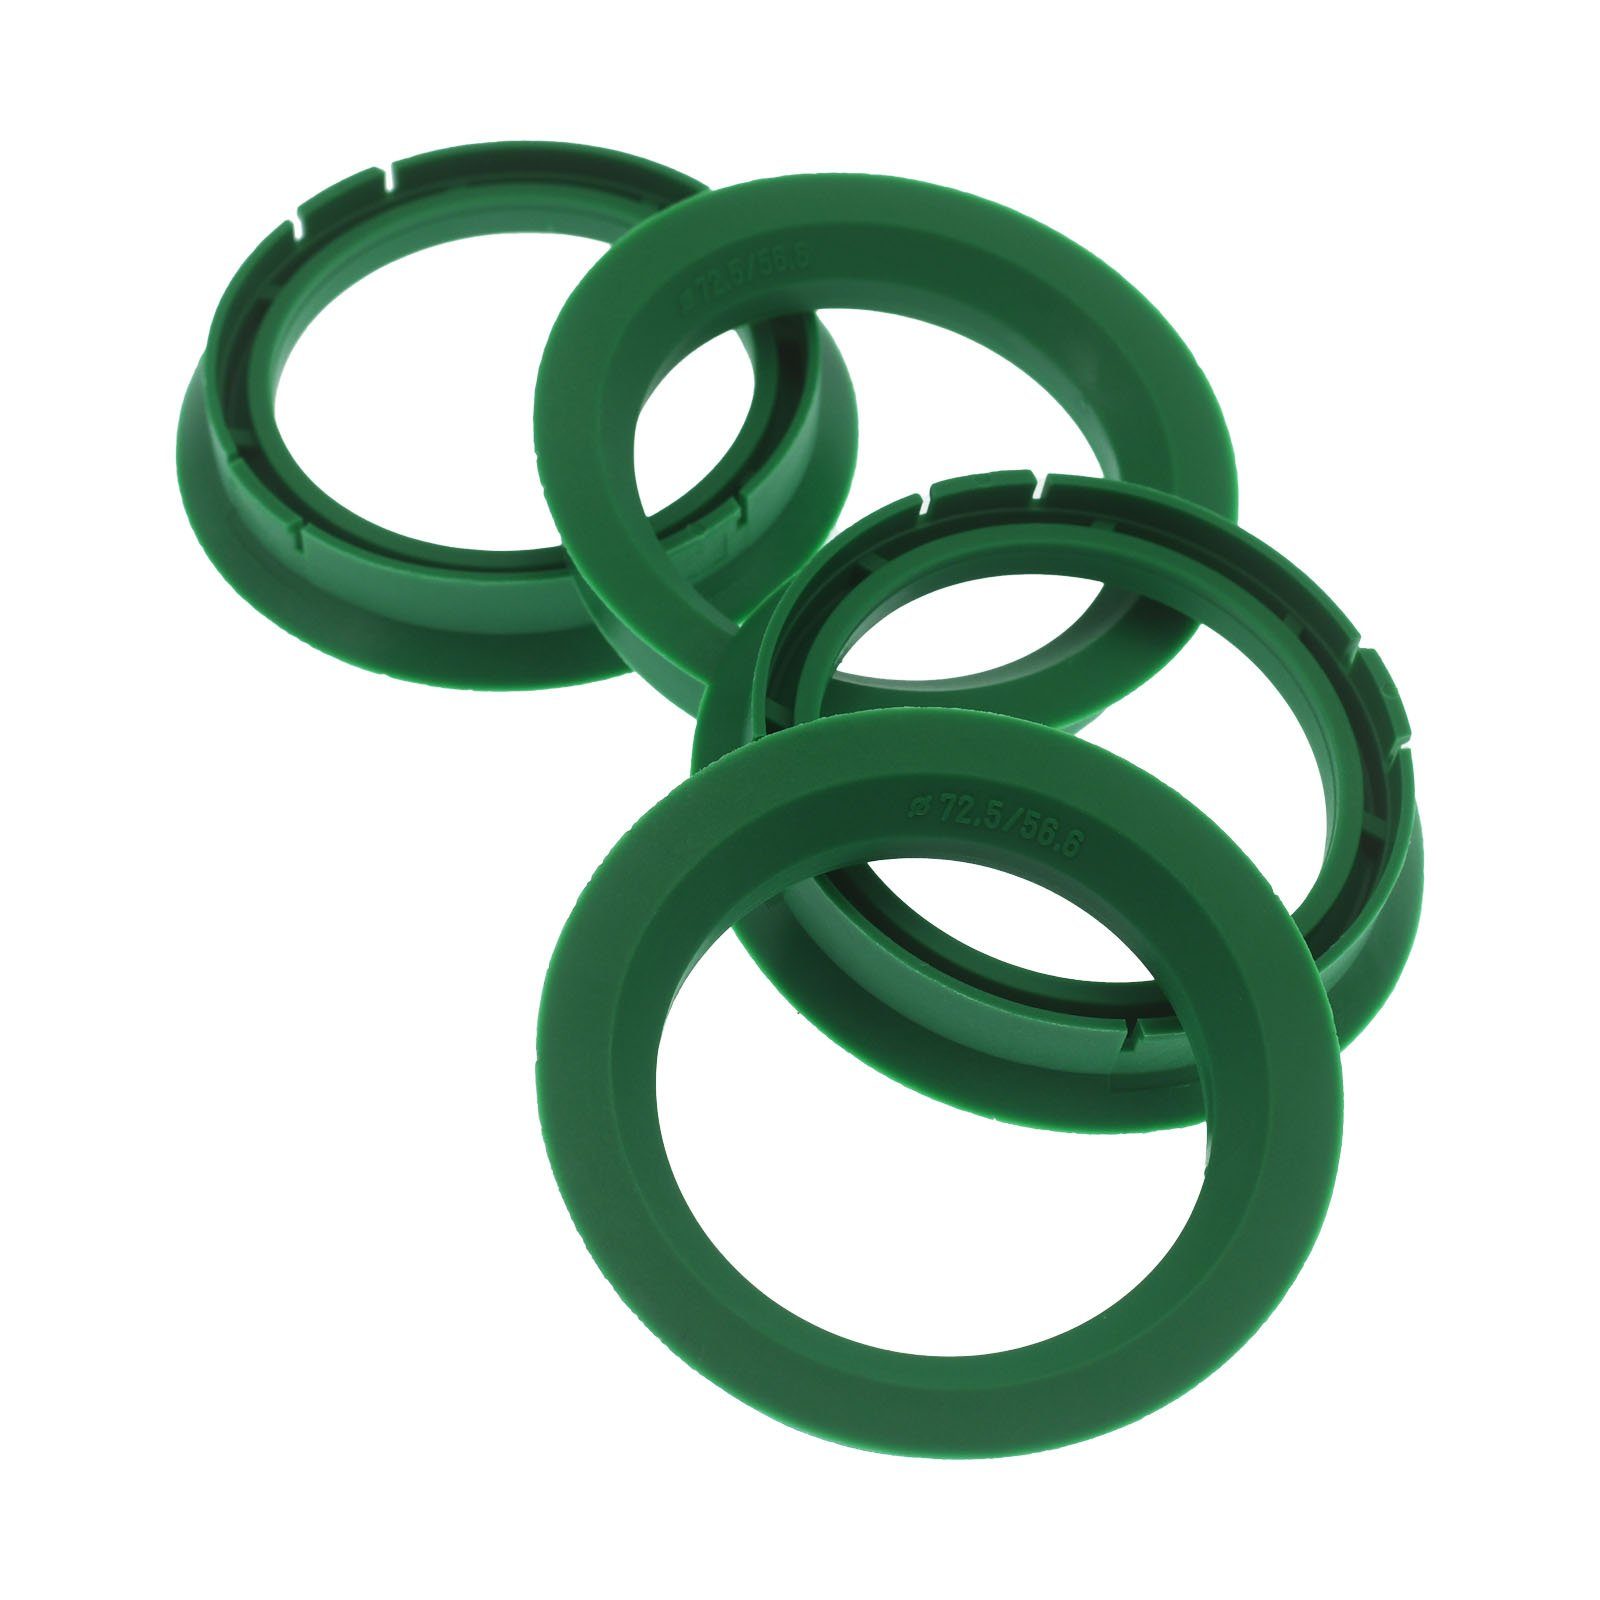 RKC Reifenstift 4x Zentrierringe Grün Felgen Ringe Made in Germany, Maße: 72,5 x 56,6 mm